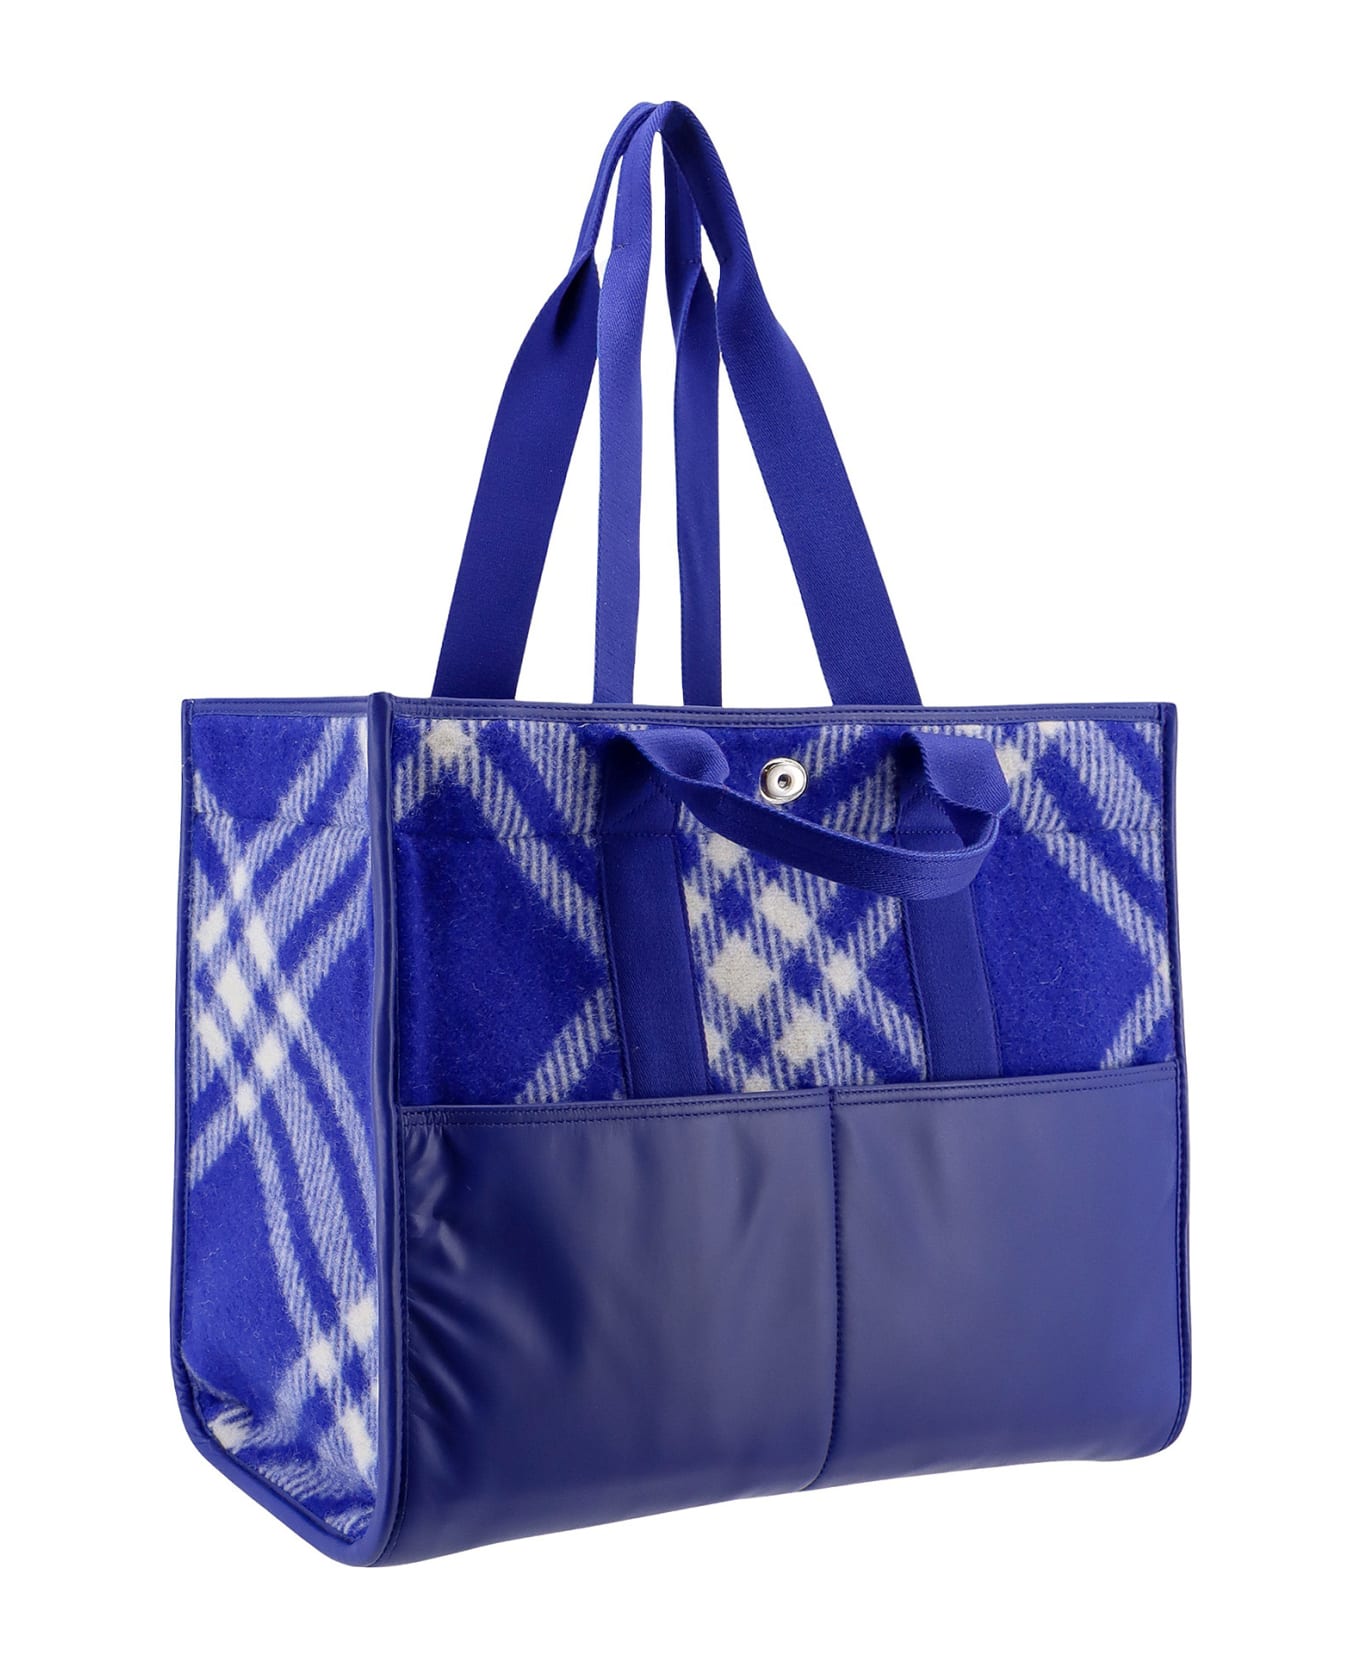 Burberry Shopper Tote Handbag - Blue